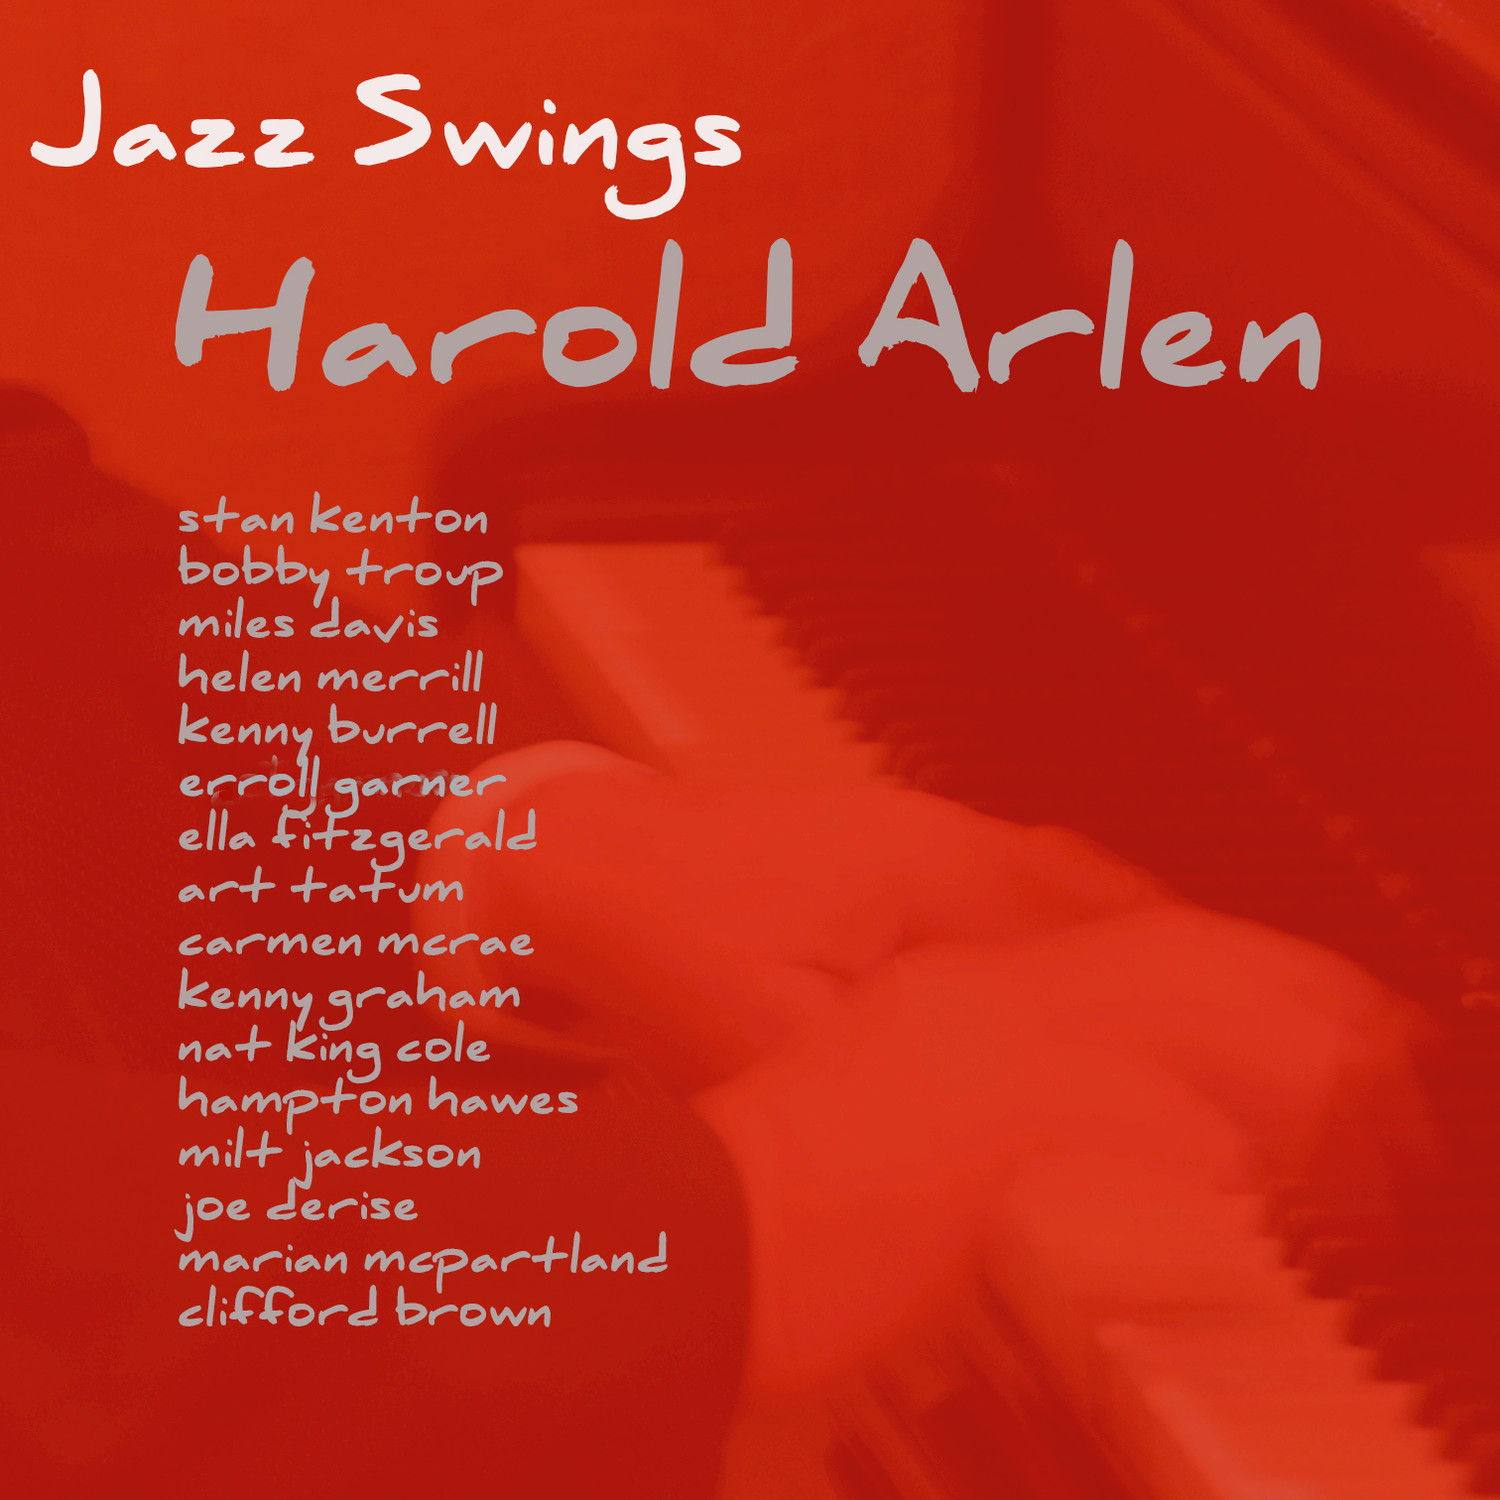 Jazz Swings: Harold Arlen